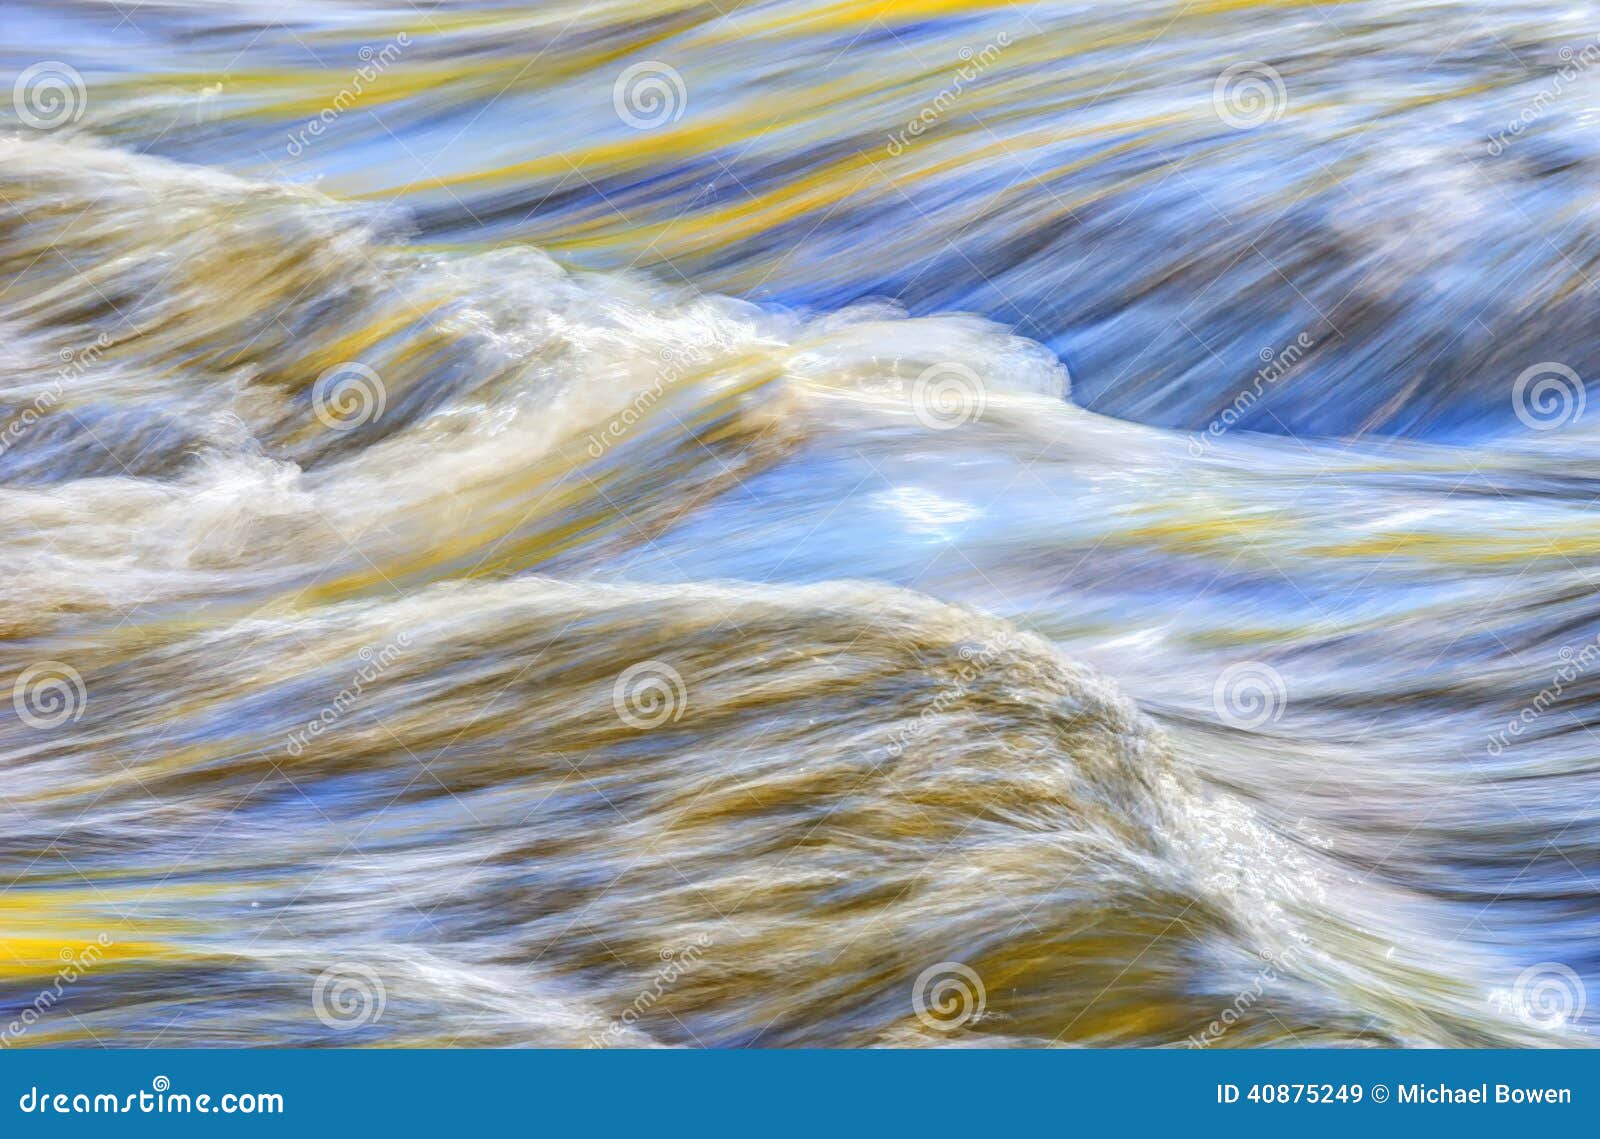 abstract water closeup